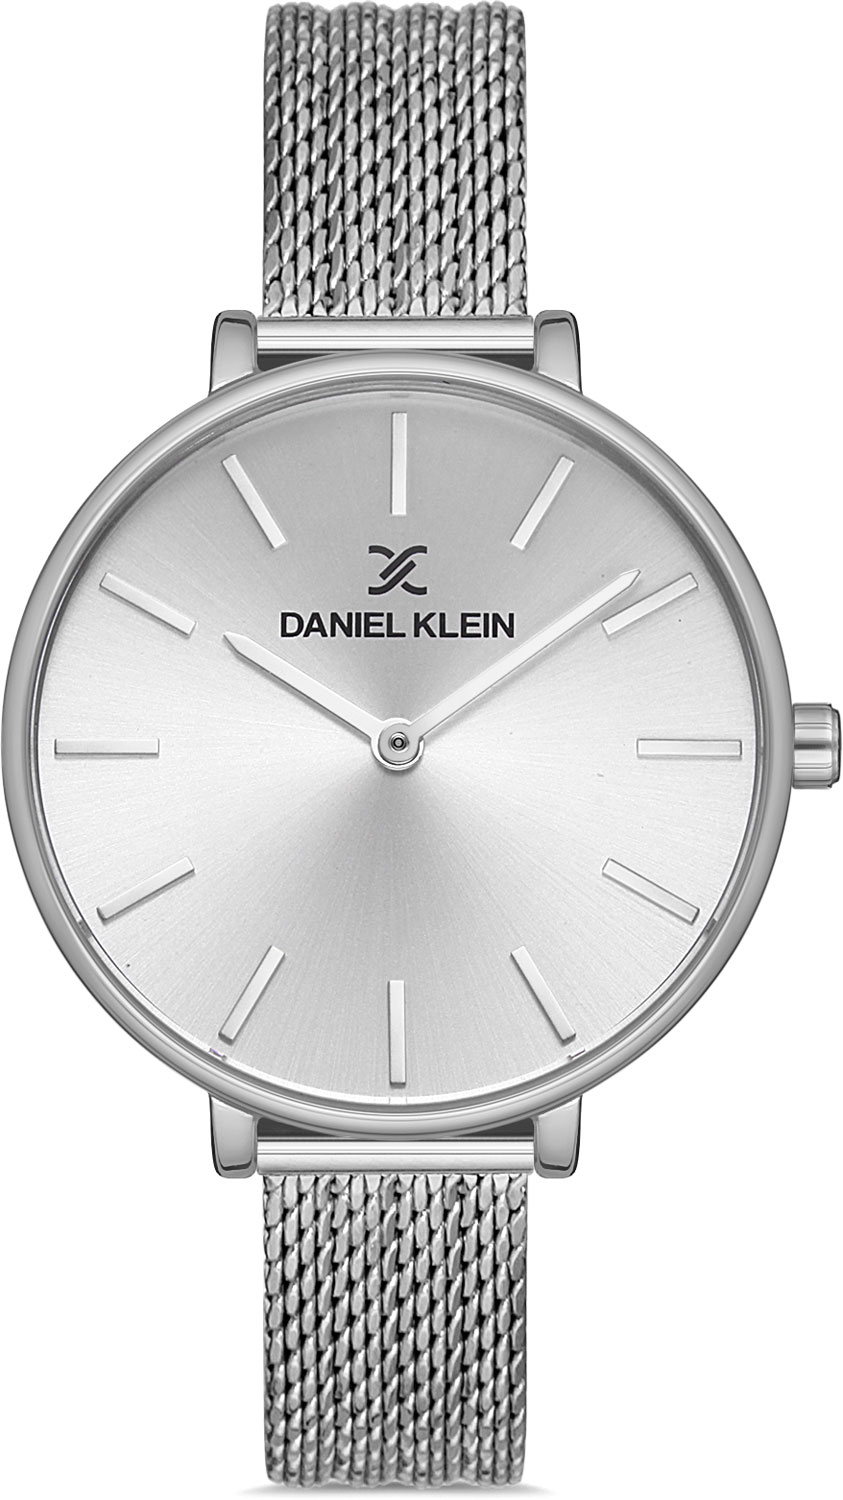   Daniel Klein DK.1.13008-1